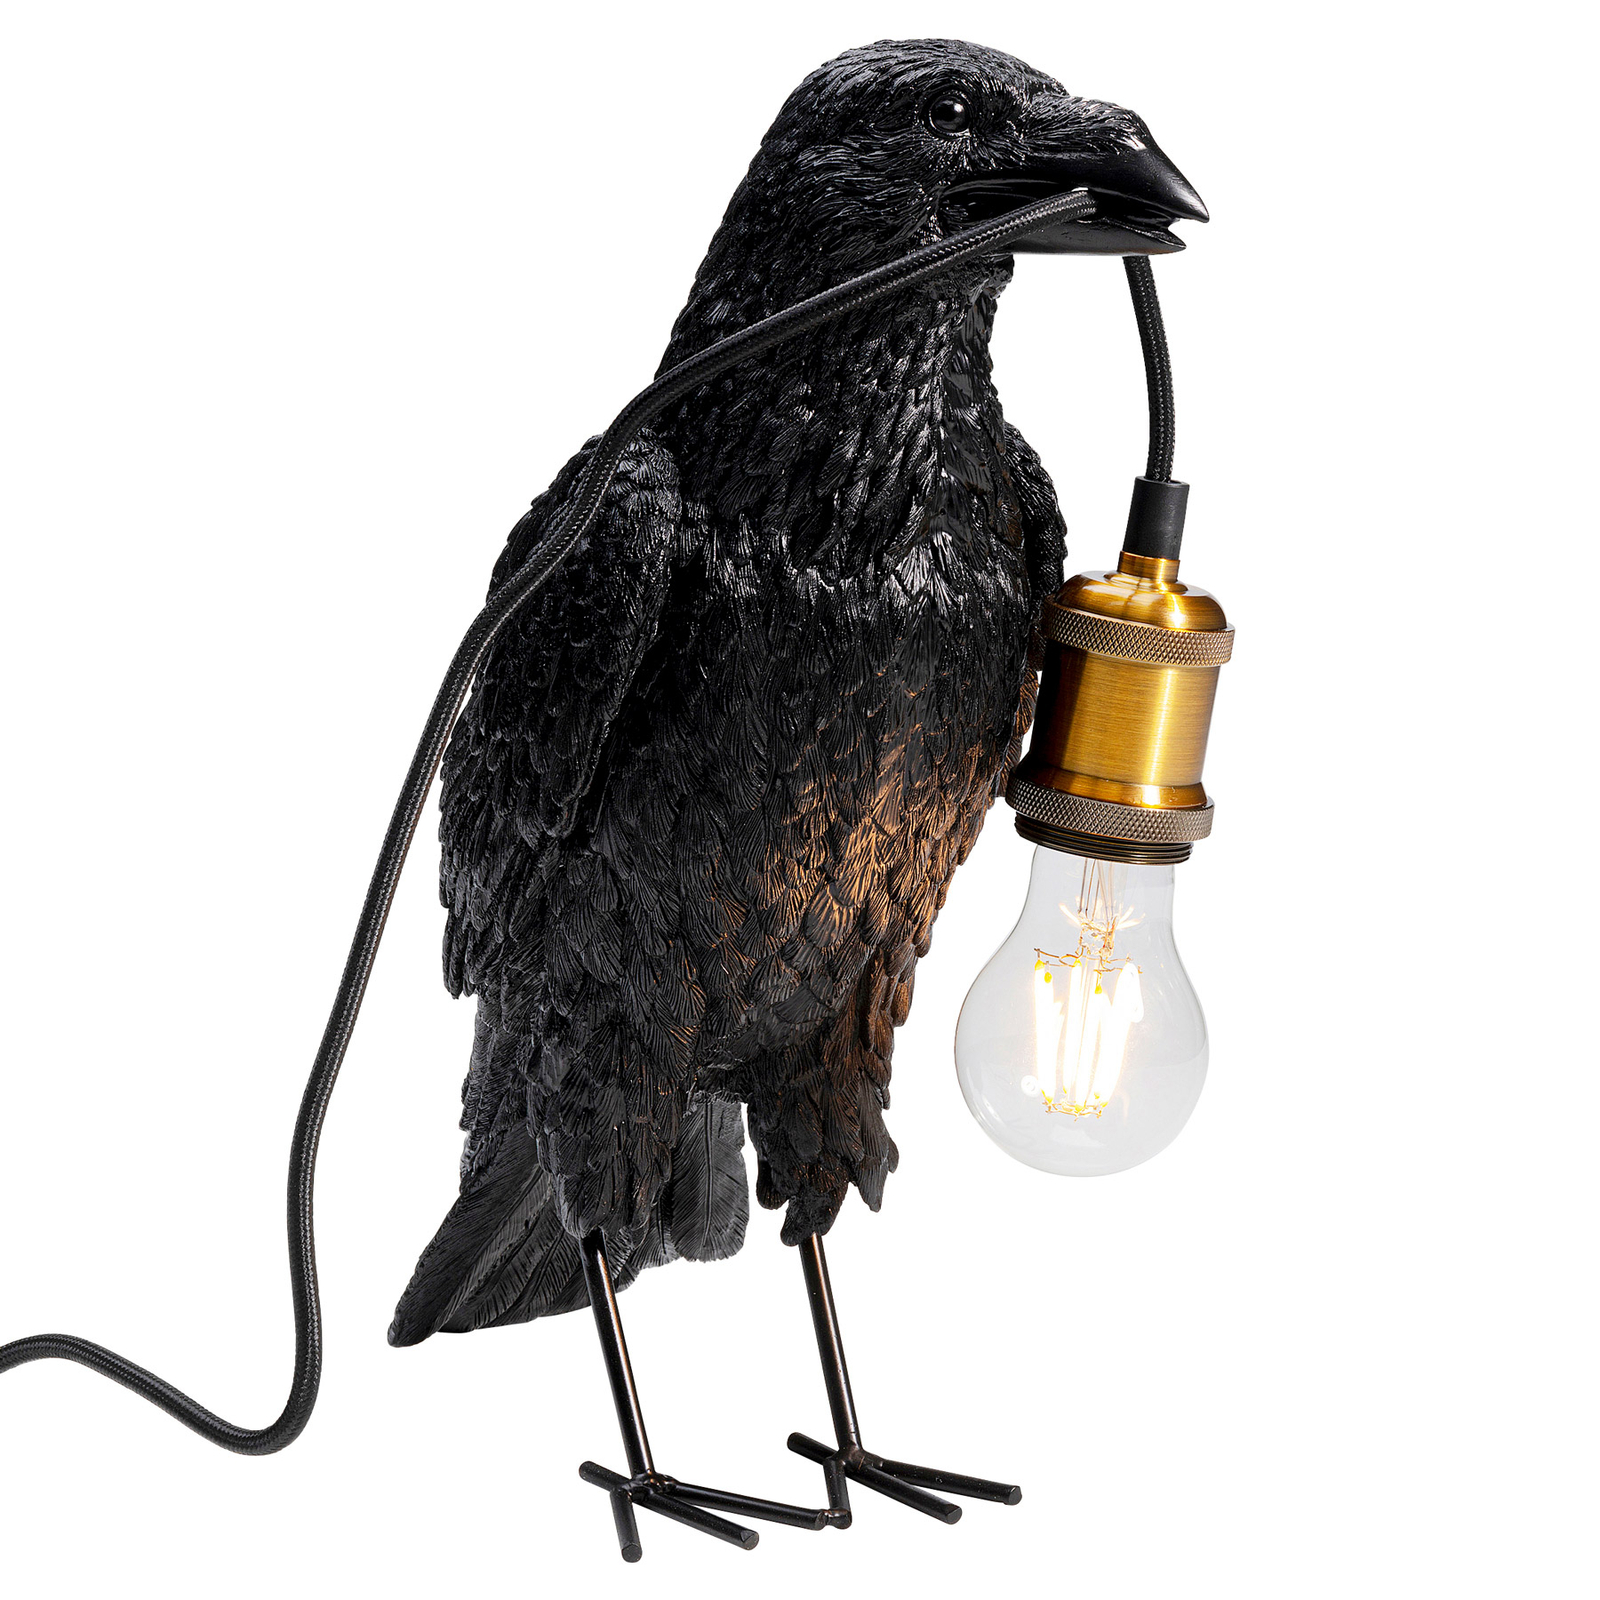 KAREN Lámpara de mesa Animal Crow en forma de cuervo